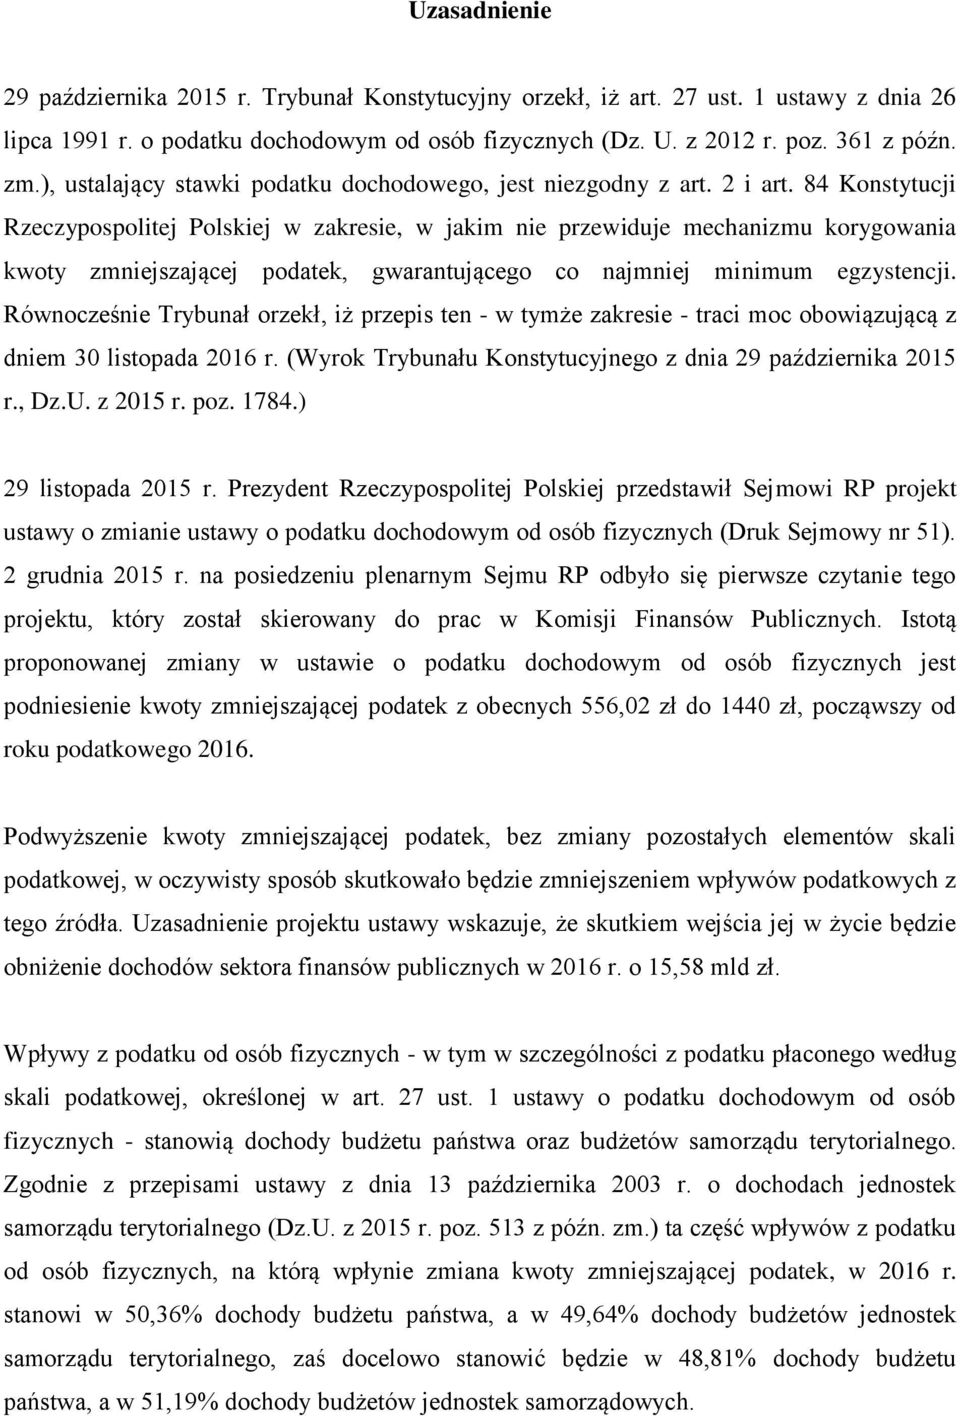 84 Konstytucji Rzeczypospolitej Polskiej w zakresie, w jakim nie przewiduje mechanizmu korygowania kwoty zmniejszającej podatek, gwarantującego co najmniej minimum egzystencji.